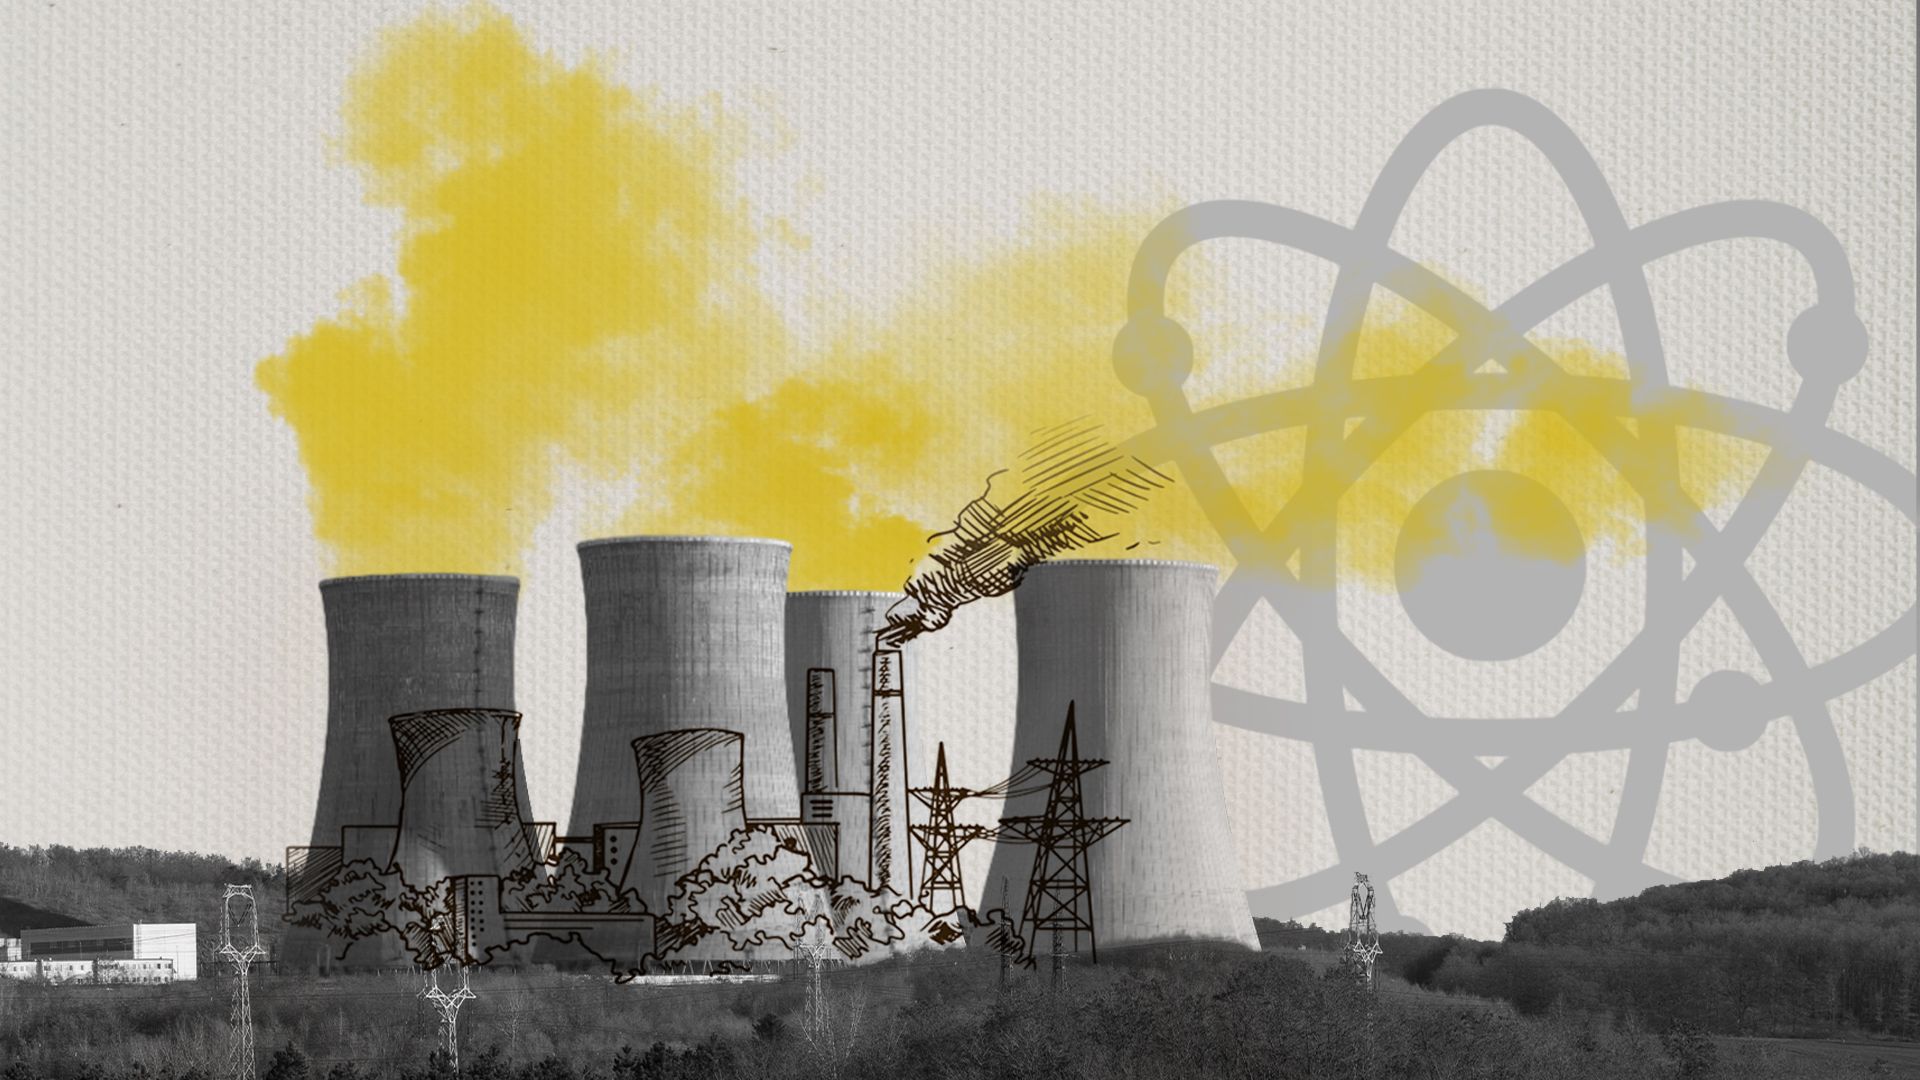 Ядерна енергетика в Україні